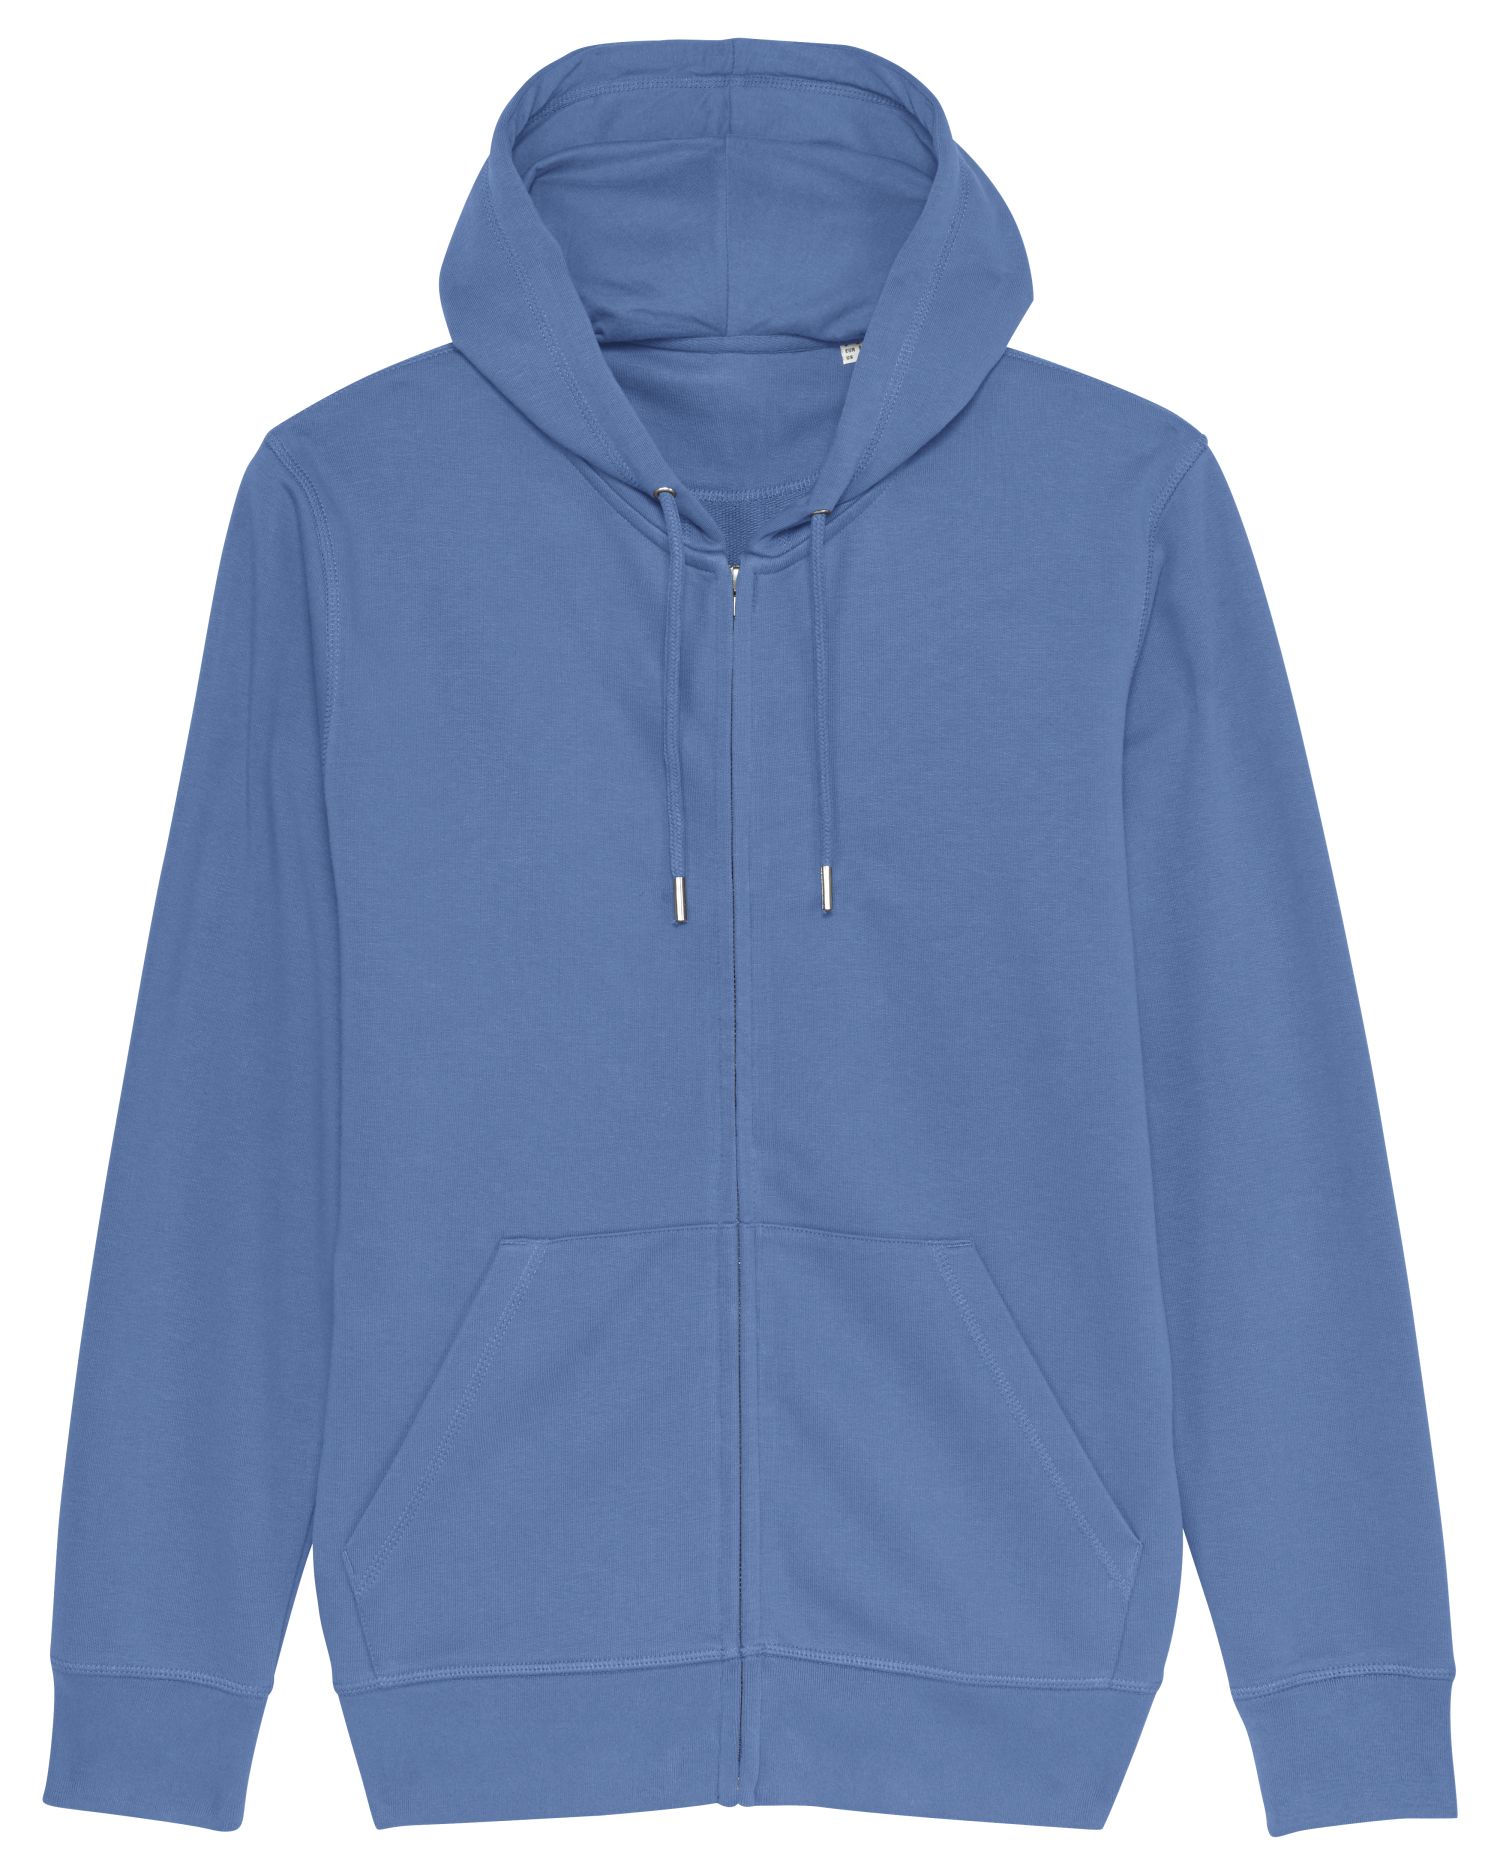 Zip-thru sweatshirts Connector in Farbe Bright Blue